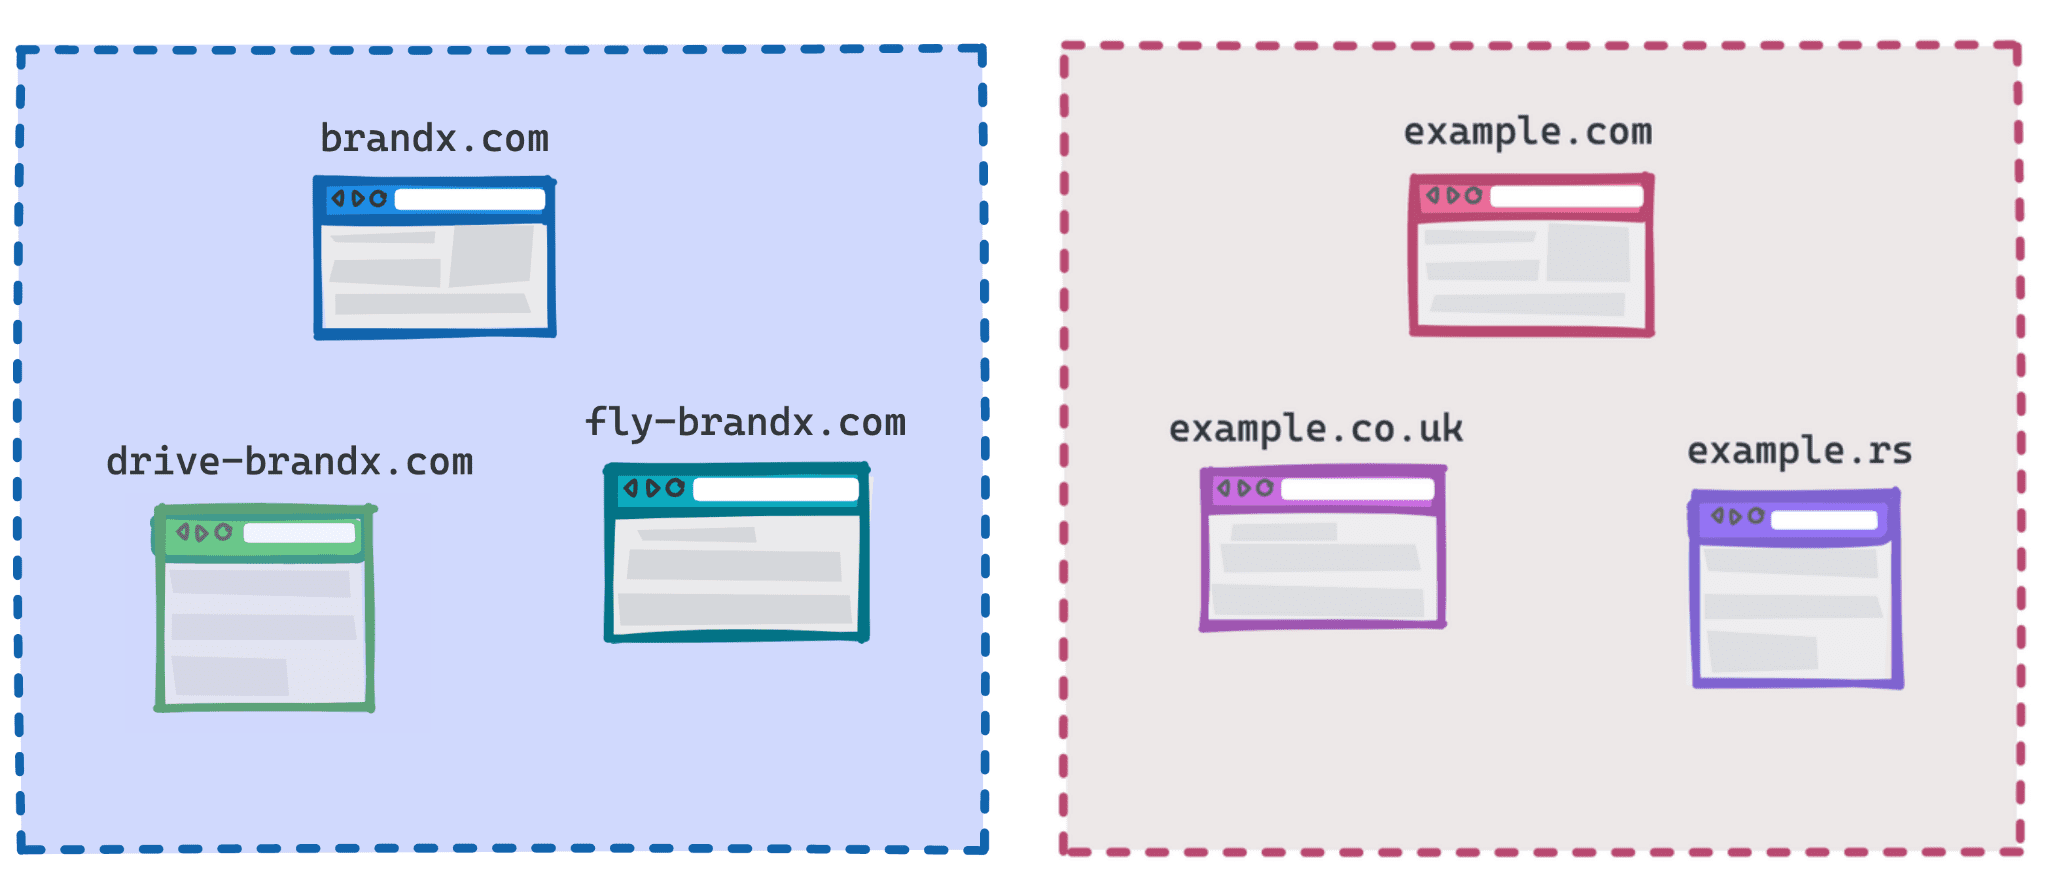 1 つのグループとして brandx.com、fly-brandx.com、drive-brandx.com、別のグループとして example.com、example.rs、example.co.uk を示す図。